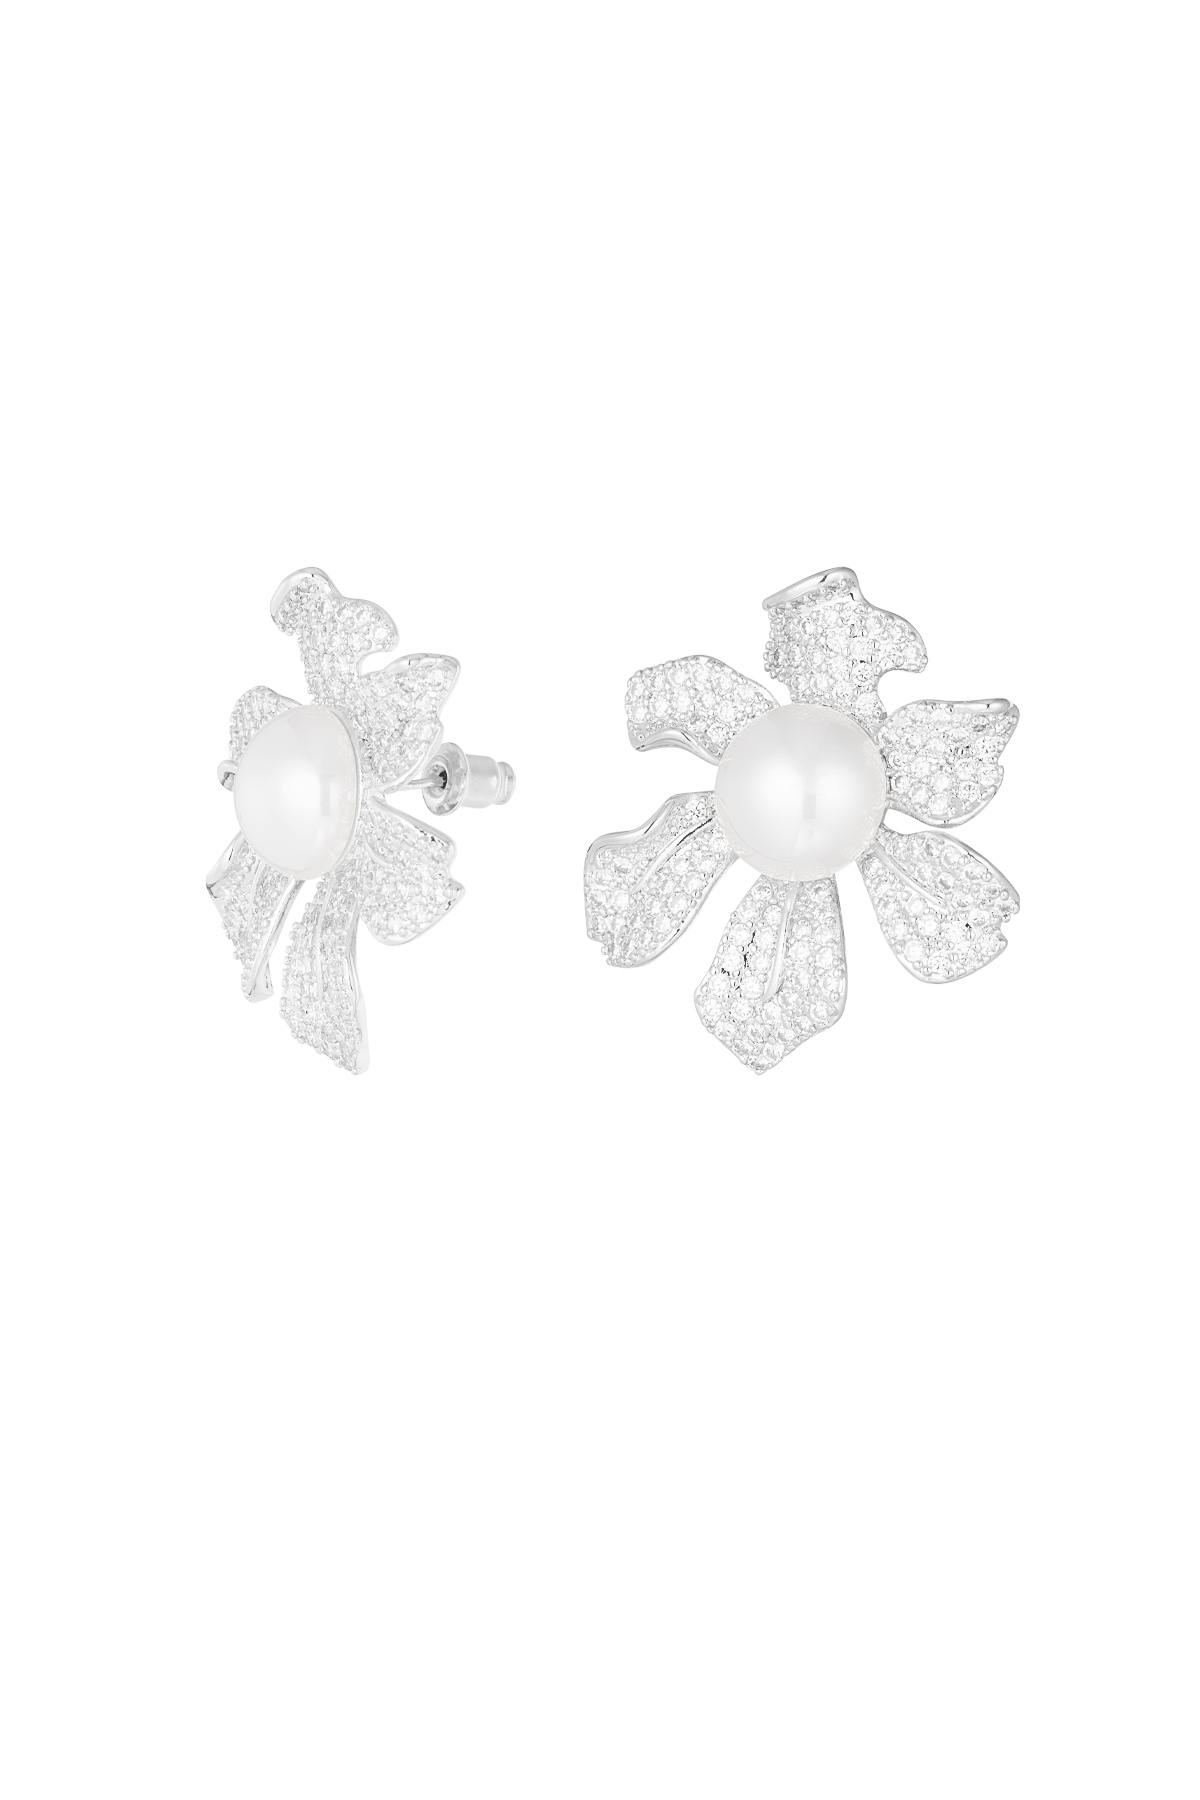 Orecchini fiore scintillante perla argento - zircone rame h5 